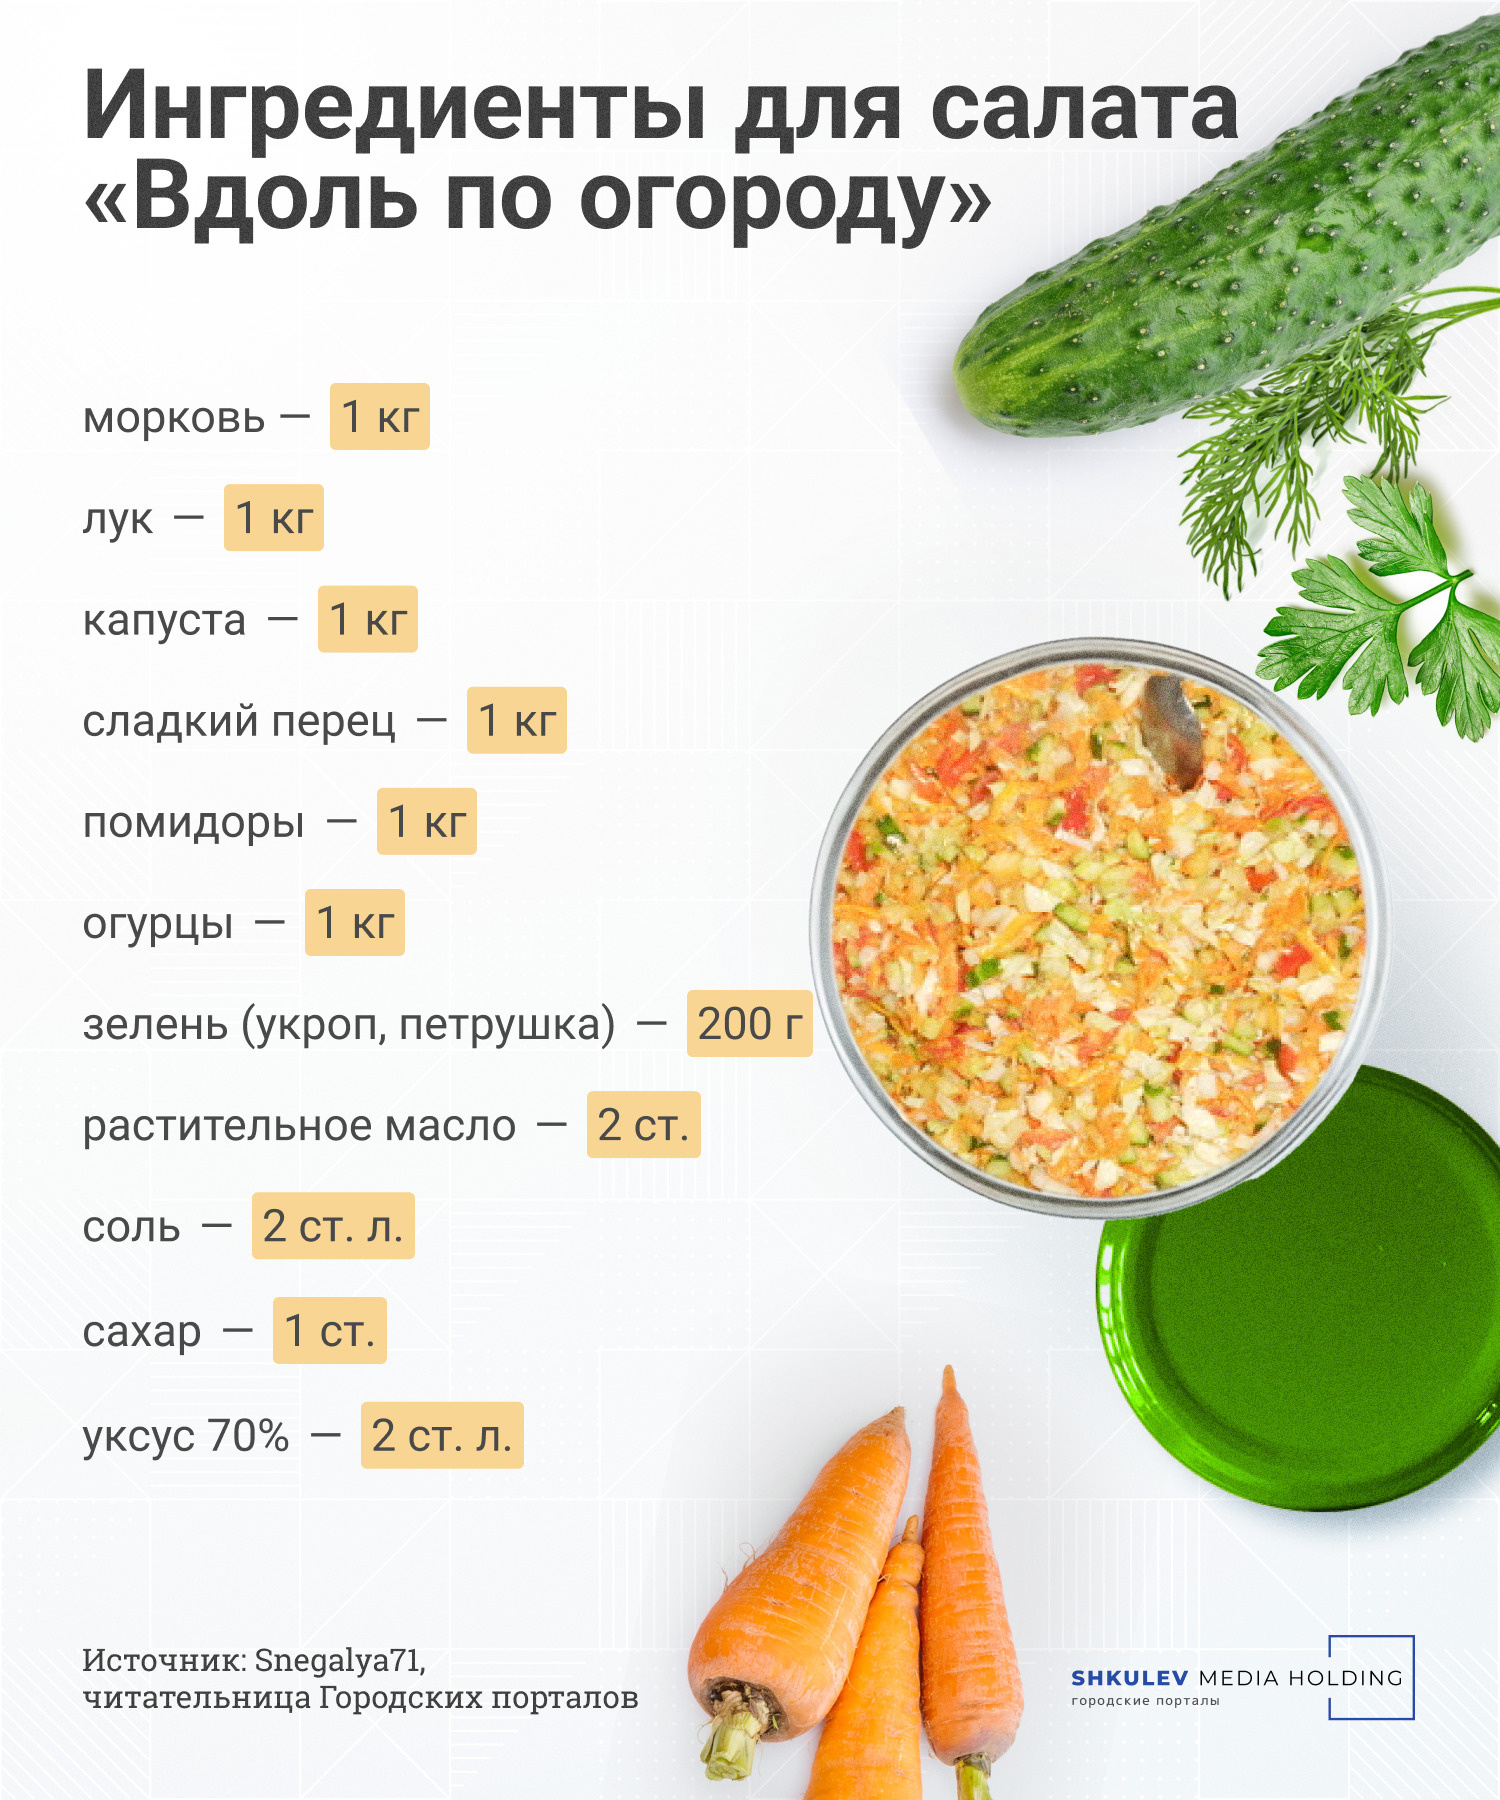 Рецепт 1. Овощной зимний салат